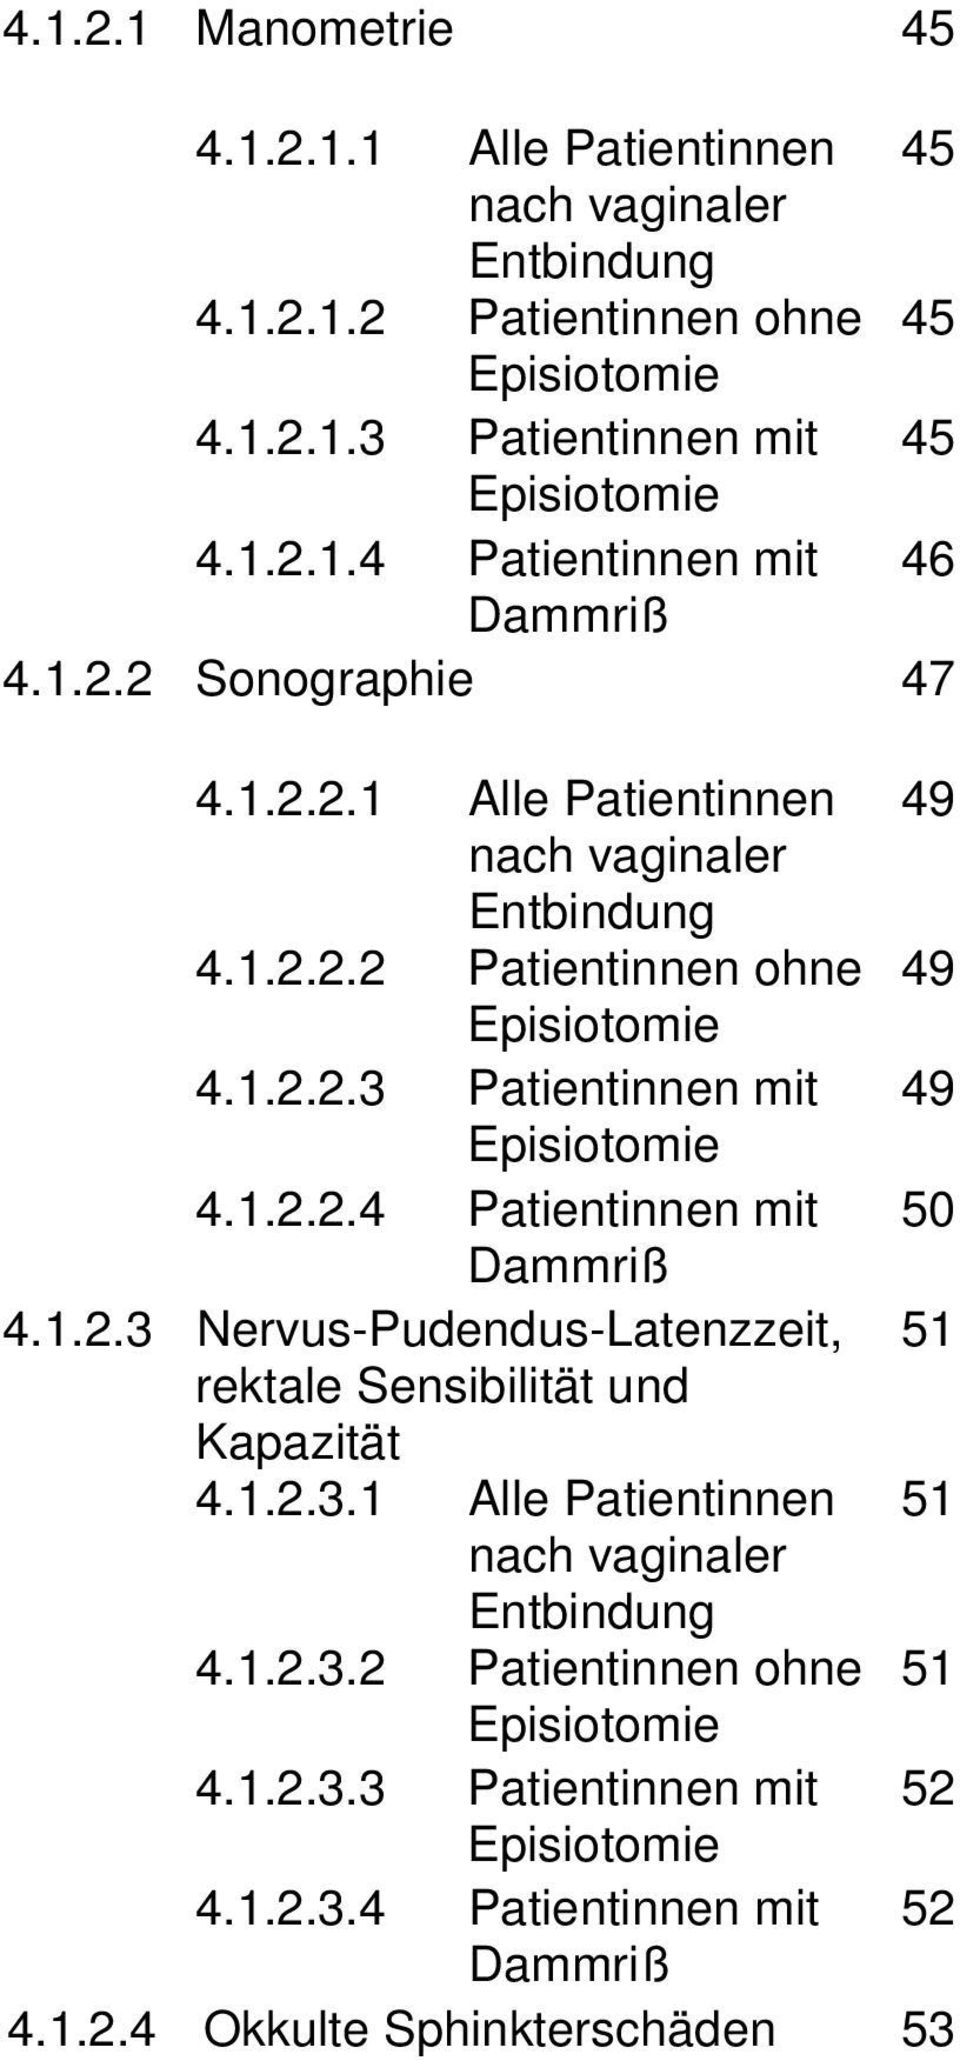 1.2.3 Nervus-Pudendus-Latenzzeit, 51 rektale Sensibilität und Kapazität 4.1.2.3.1 Alle Patientinnen 51 nach vaginaler Entbindung 4.1.2.3.2 Patientinnen ohne 51 Episiotomie 4.